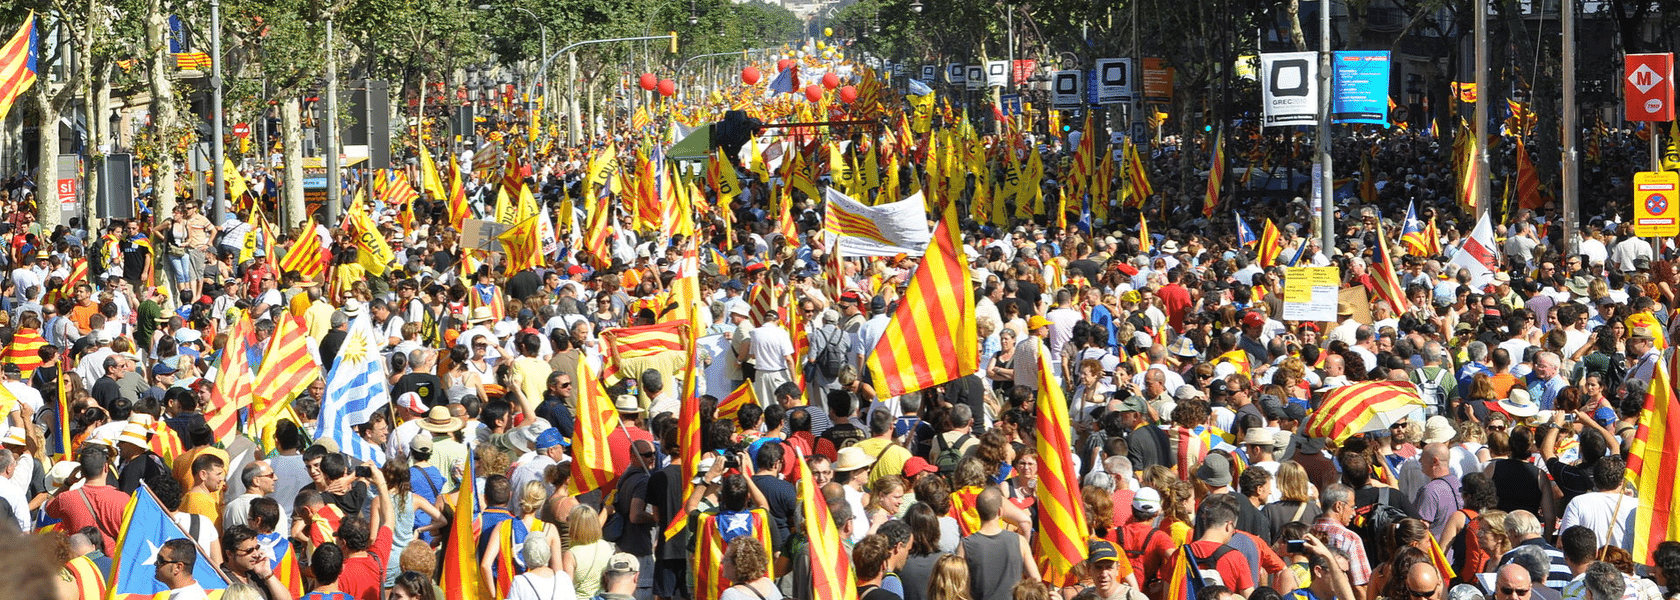 Madrid - Procès des indépendantistes Catalans : La FIDH et Euromed Droits dénoncent des irrégularités